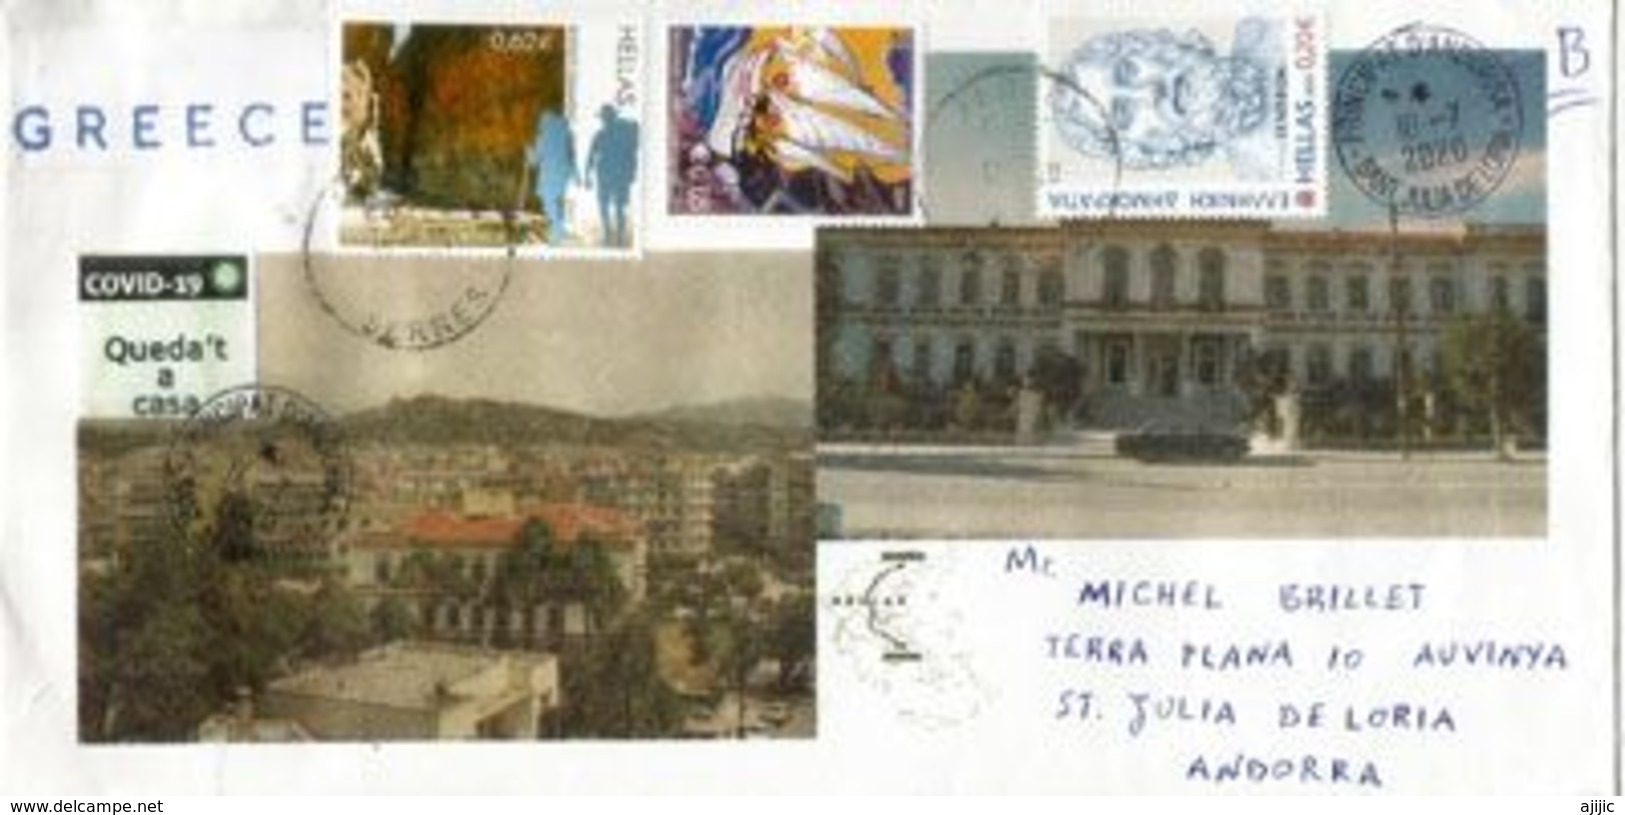 Lettre De Grèce Envoyée Andorra Pendant Le COVID19 Lockdown, Avec Vignette Prévention STAY HOME / QUEDA'T A CASA - Storia Postale